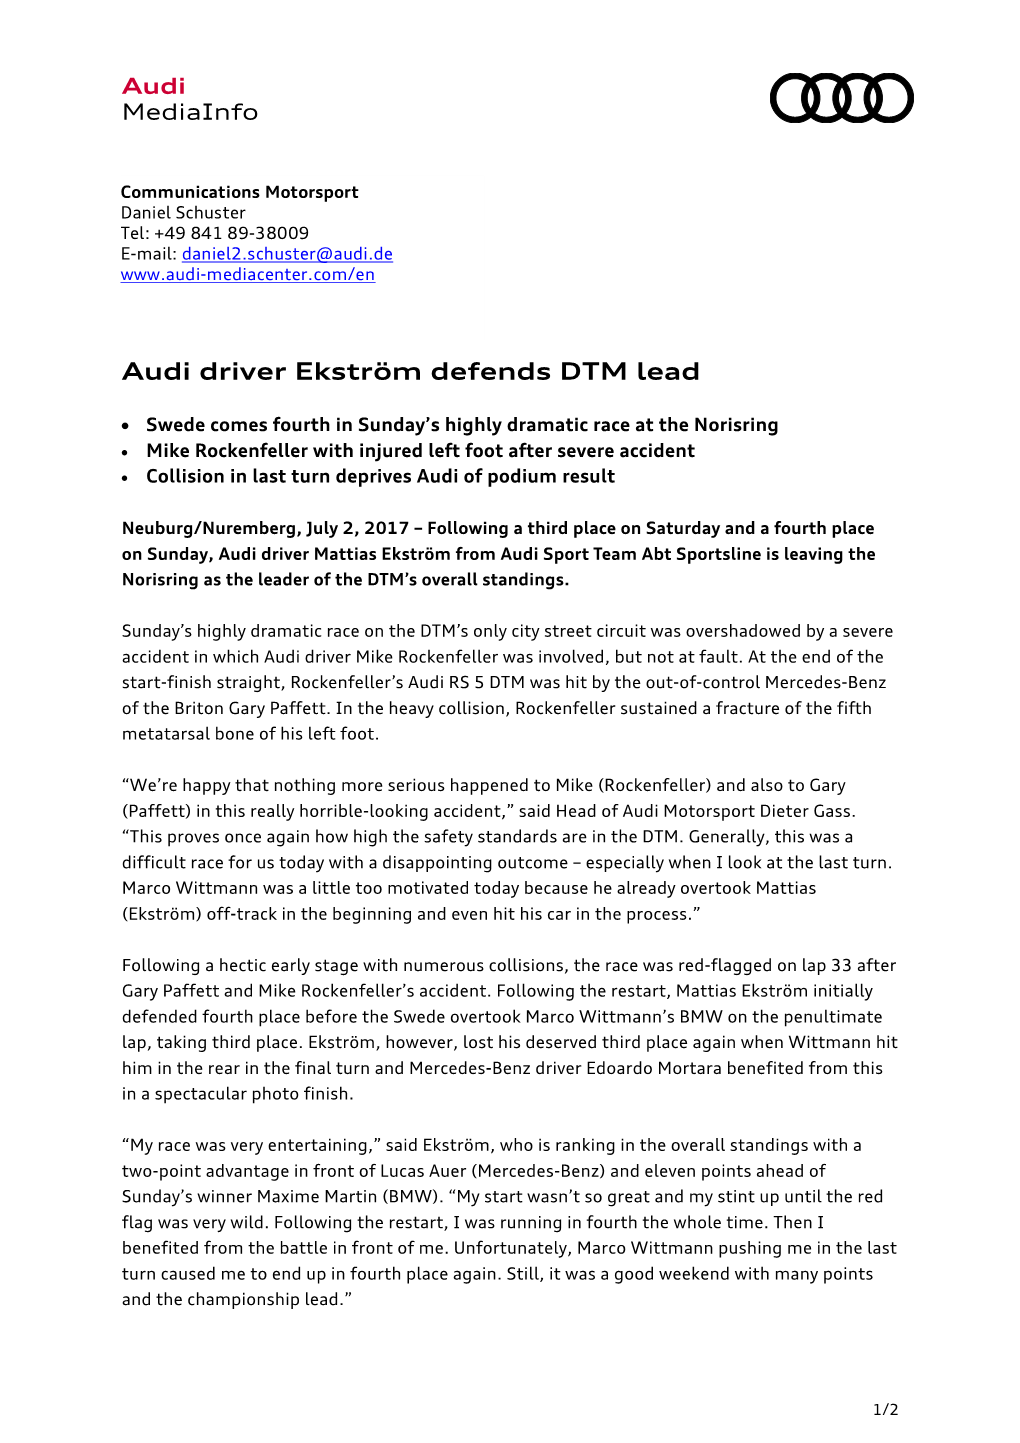 Audi Driver Ekström Defends DTM Lead